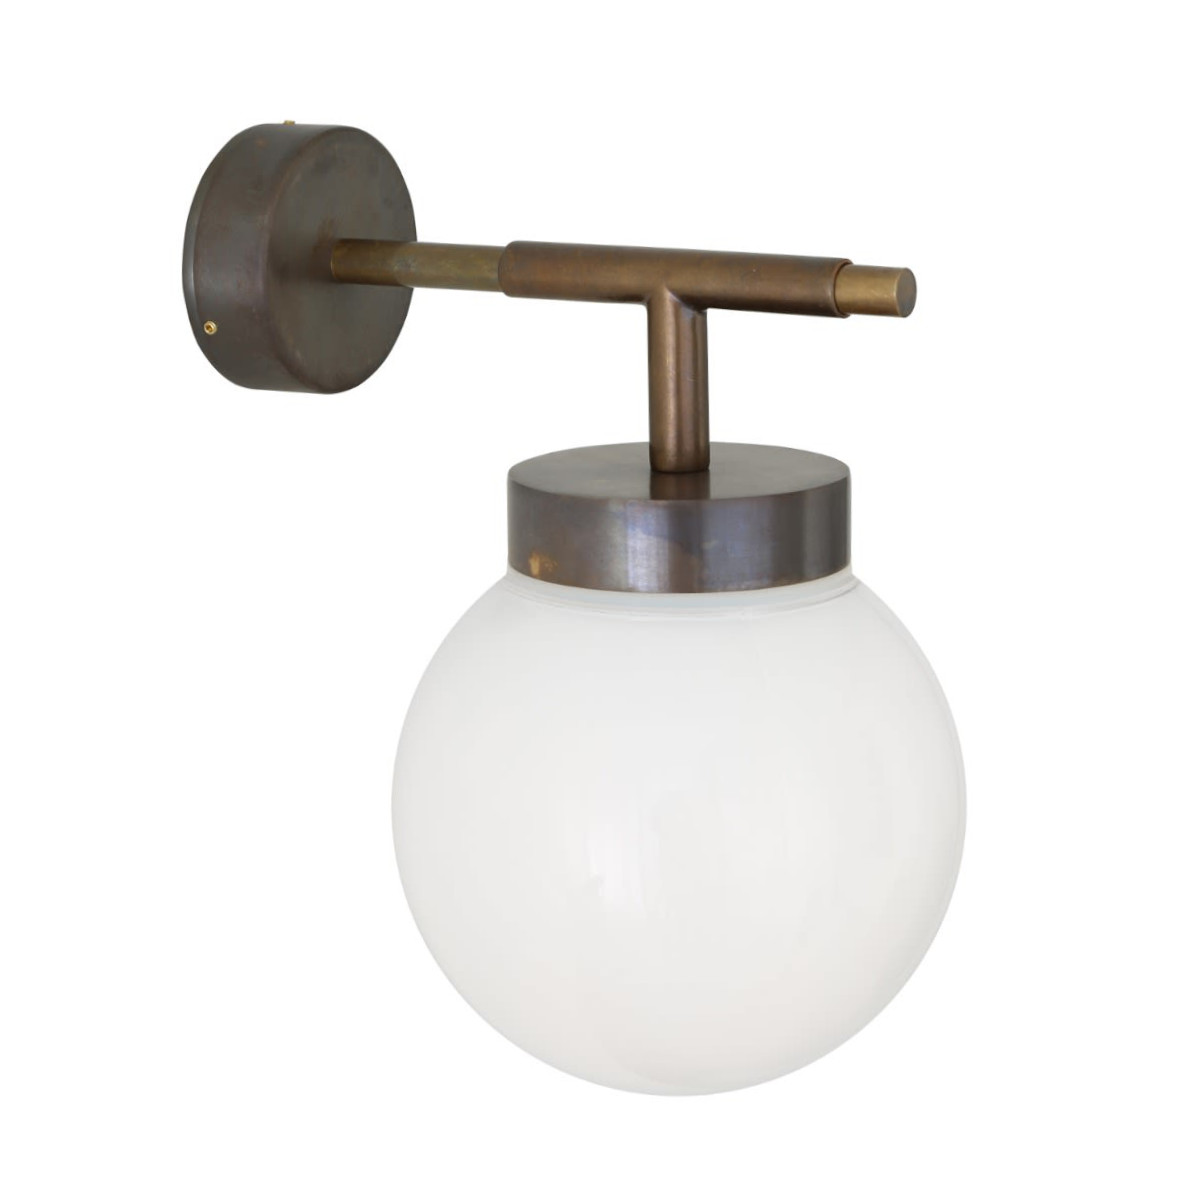 Moderne Badezimmer-Wandlampe mit Glaskugel, IP65: Moderne Wandlampe, IP65 für Bäder geeignet, hier mit opaler Glaskugel in Alt-Messing patiniert